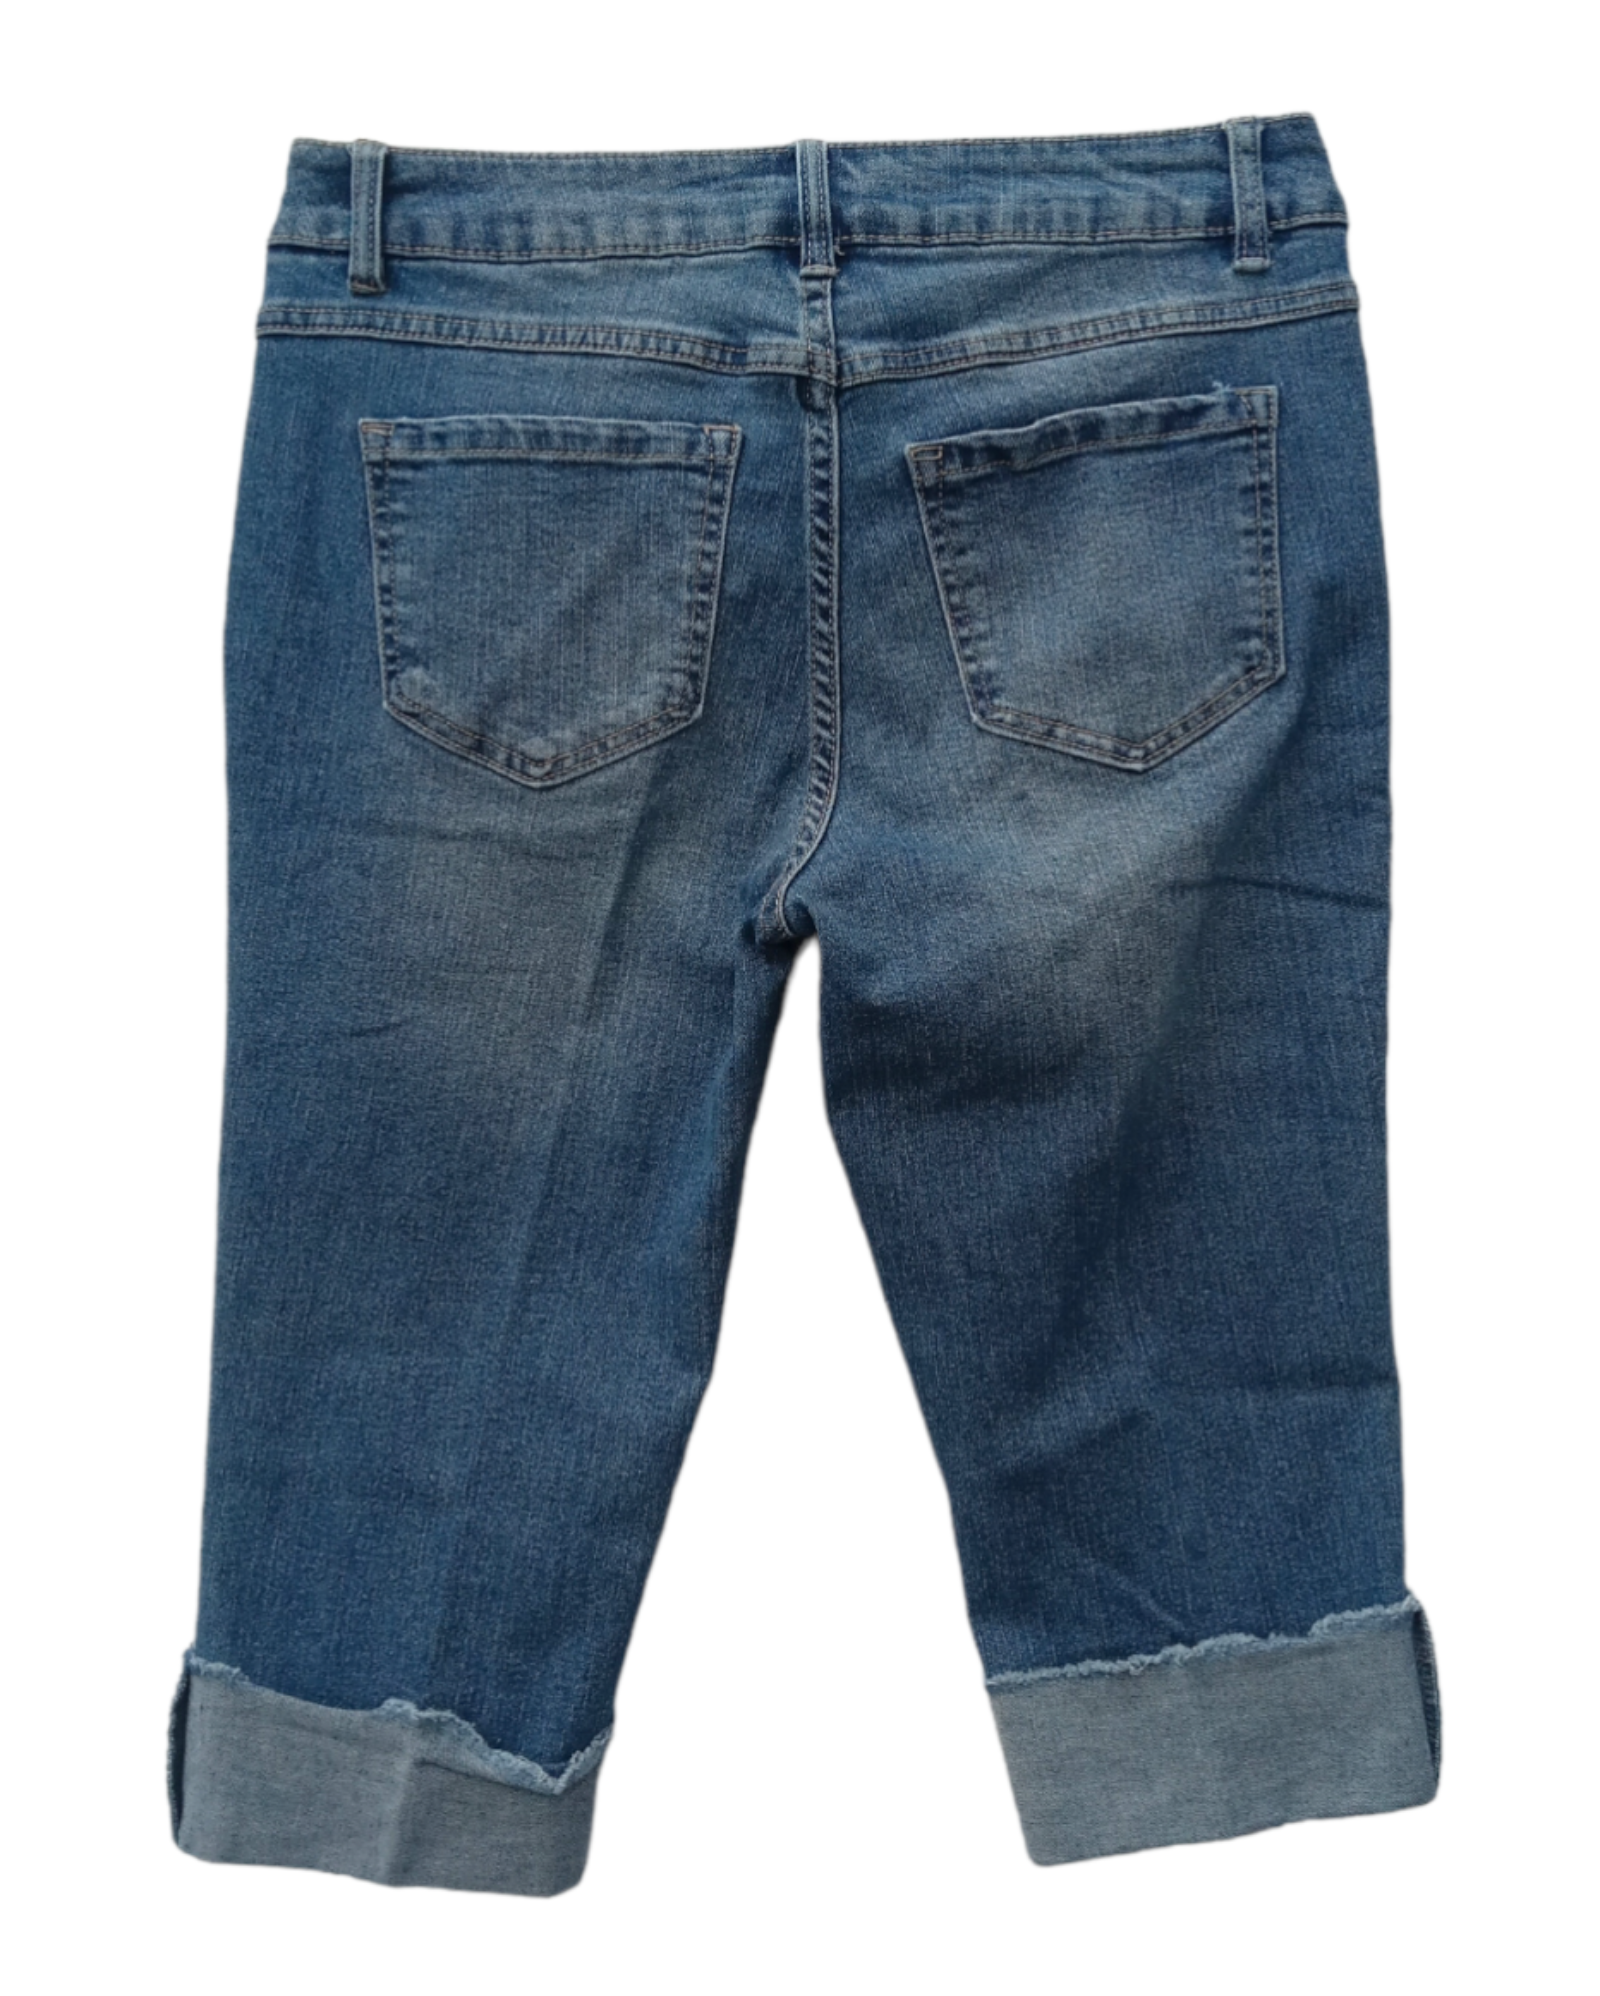 Jeans Rectos D.jeans